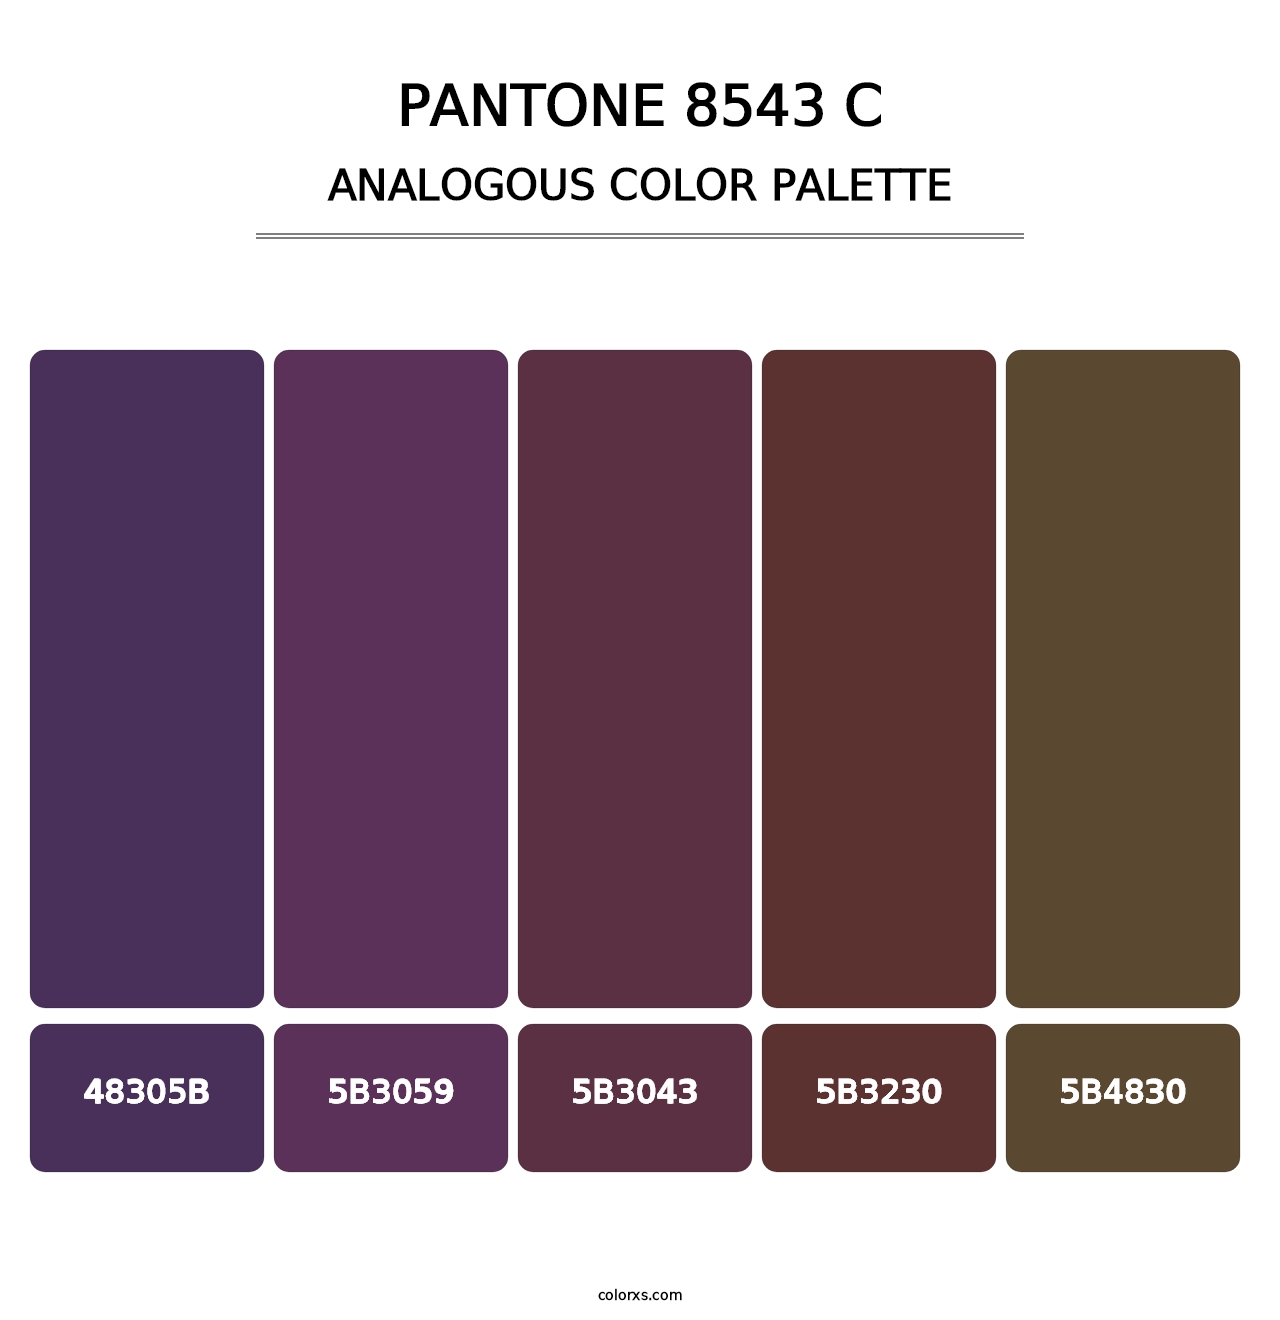 PANTONE 8543 C - Analogous Color Palette